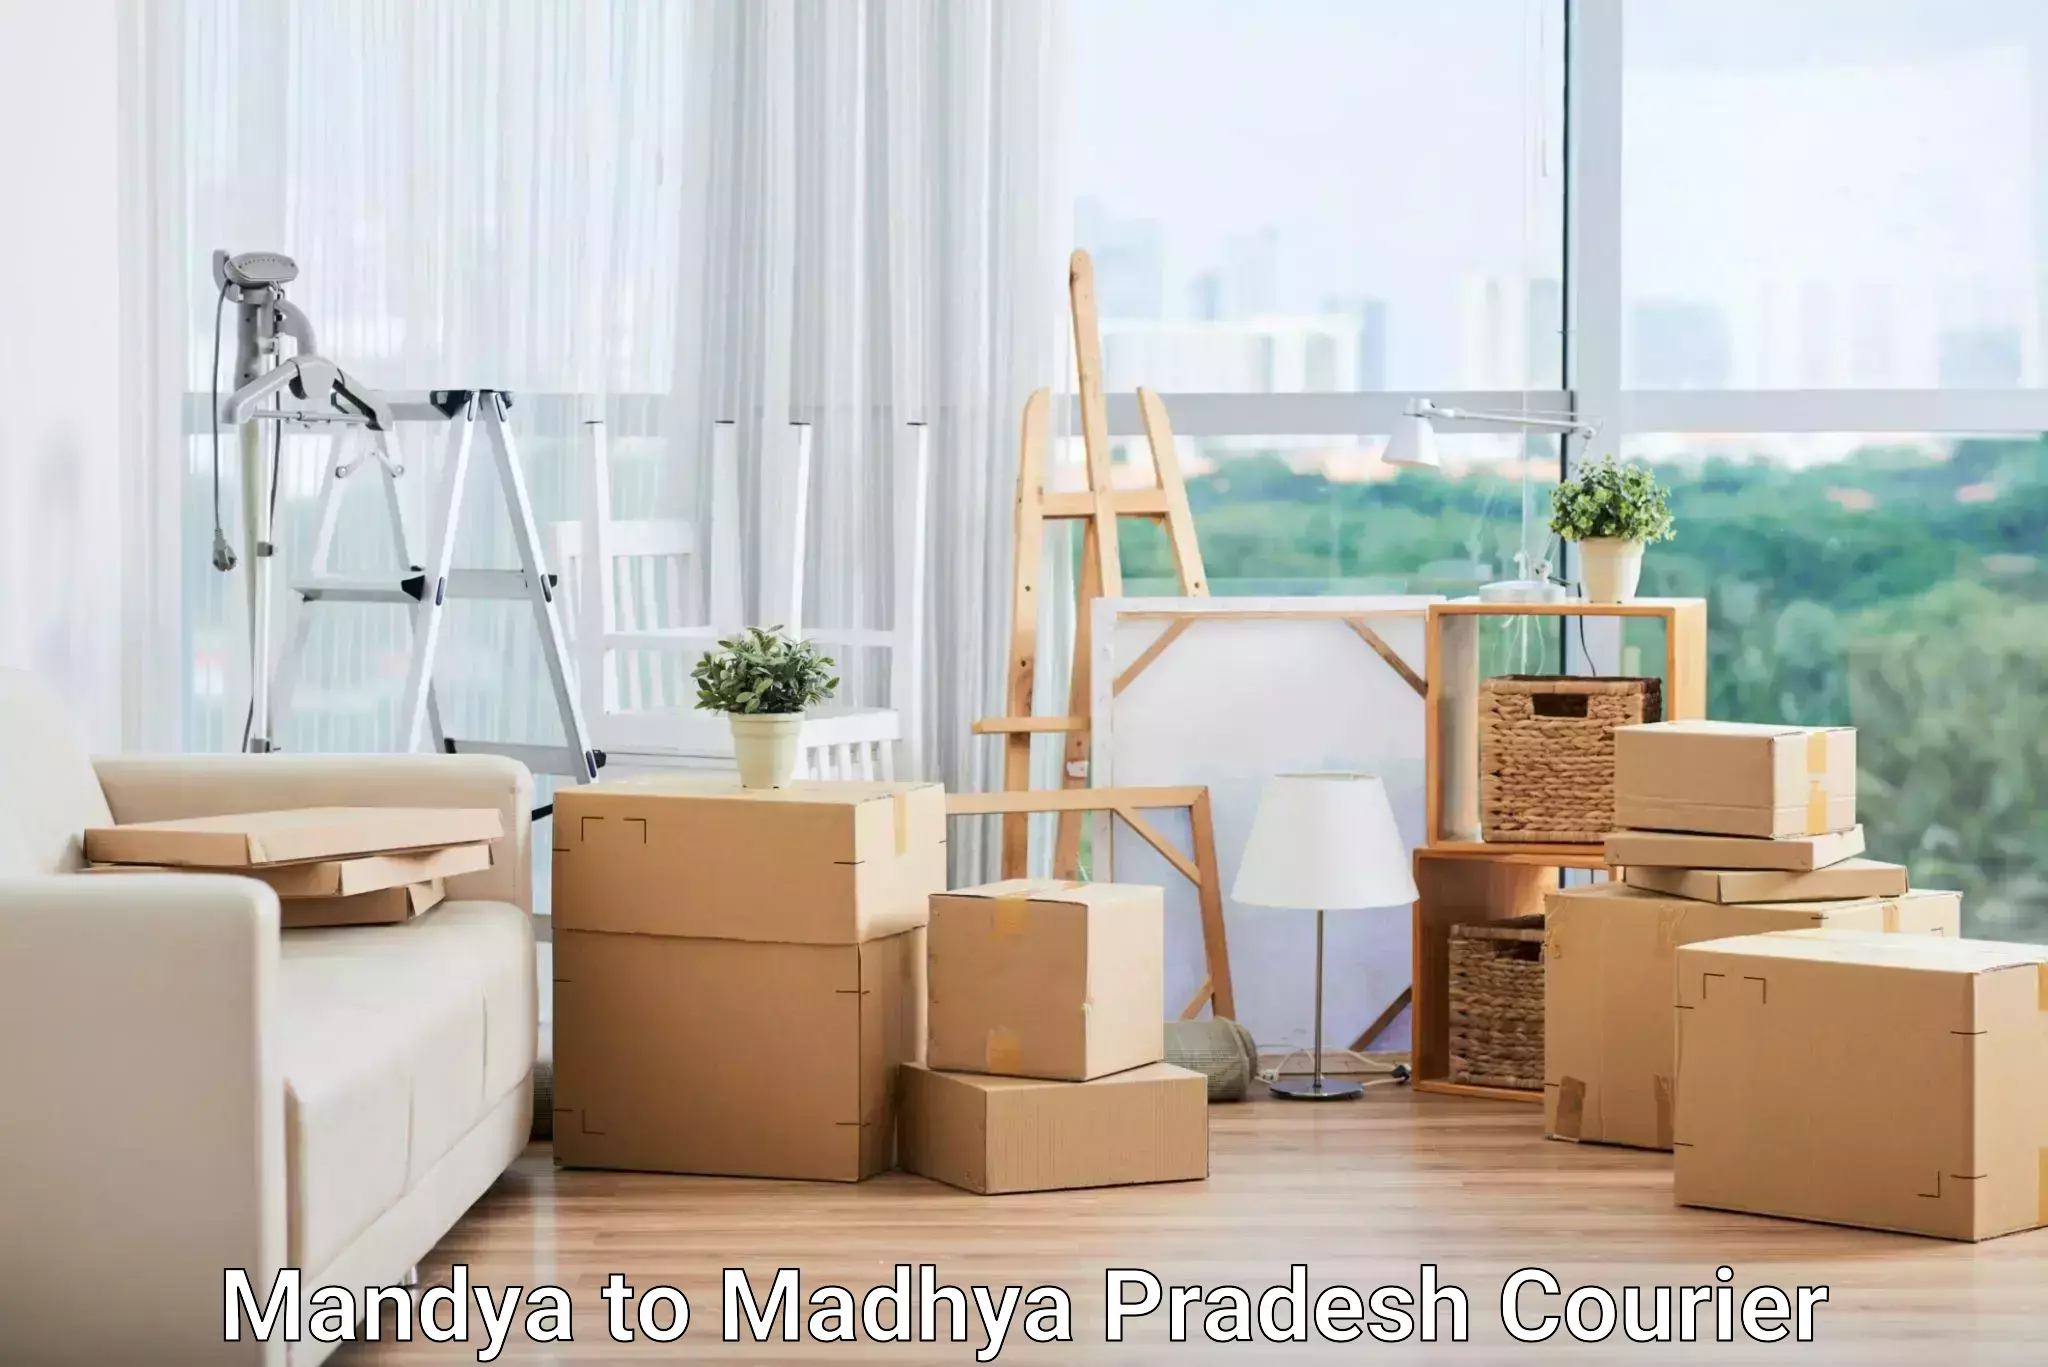 Business courier solutions Mandya to Badnagar